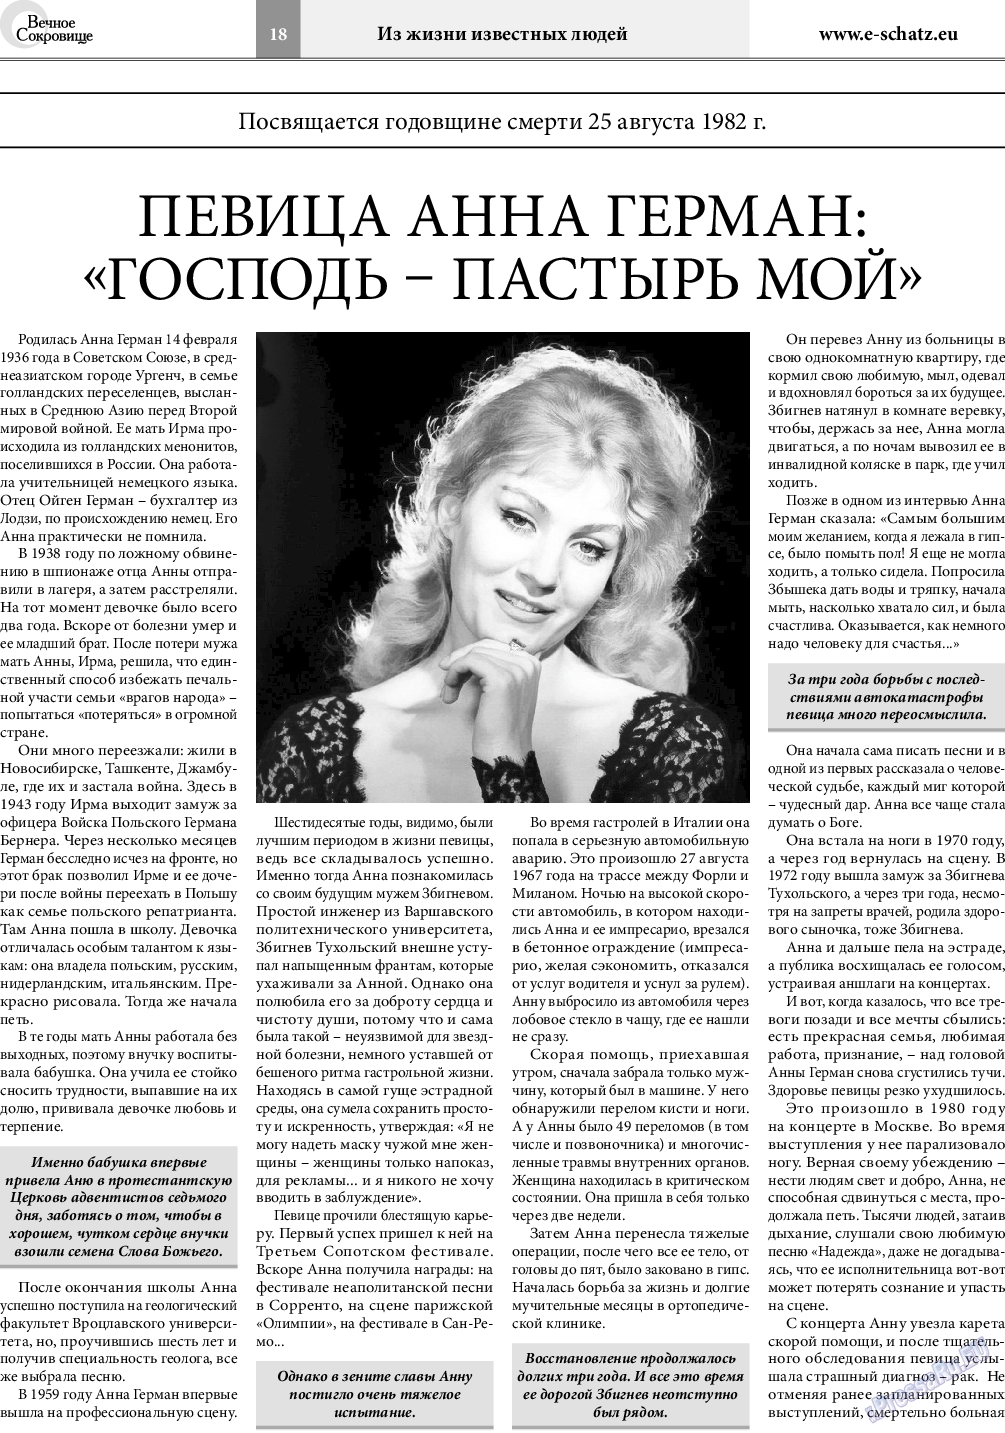 Вечное сокровище, газета. 2020 №4 стр.18